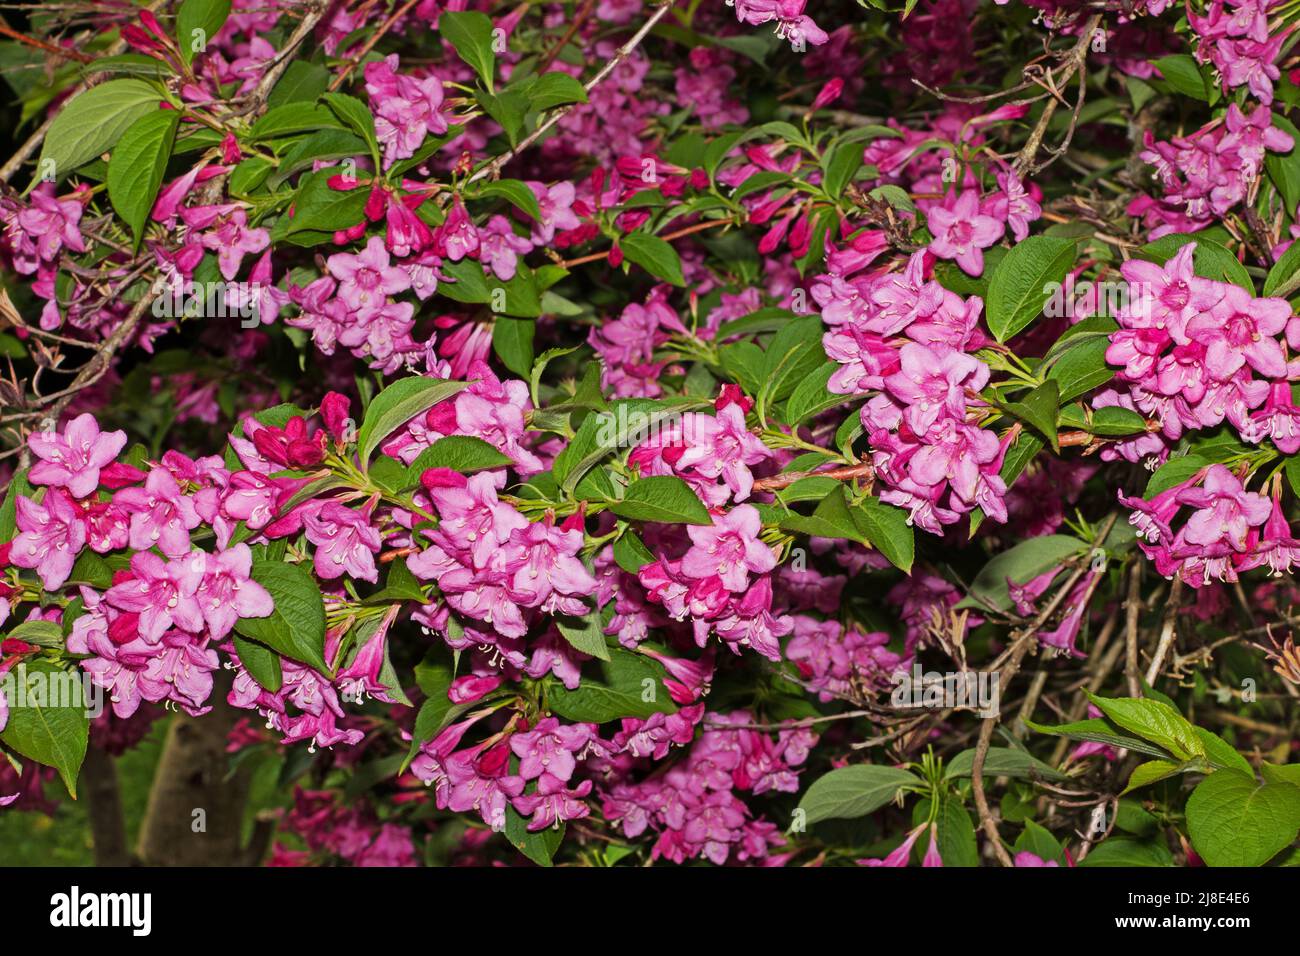 Weigela florida è arbusto deciduo cespugliato originario della Cina settentrionale, Corea e Giappone dove cresce in boschi. Foto Stock